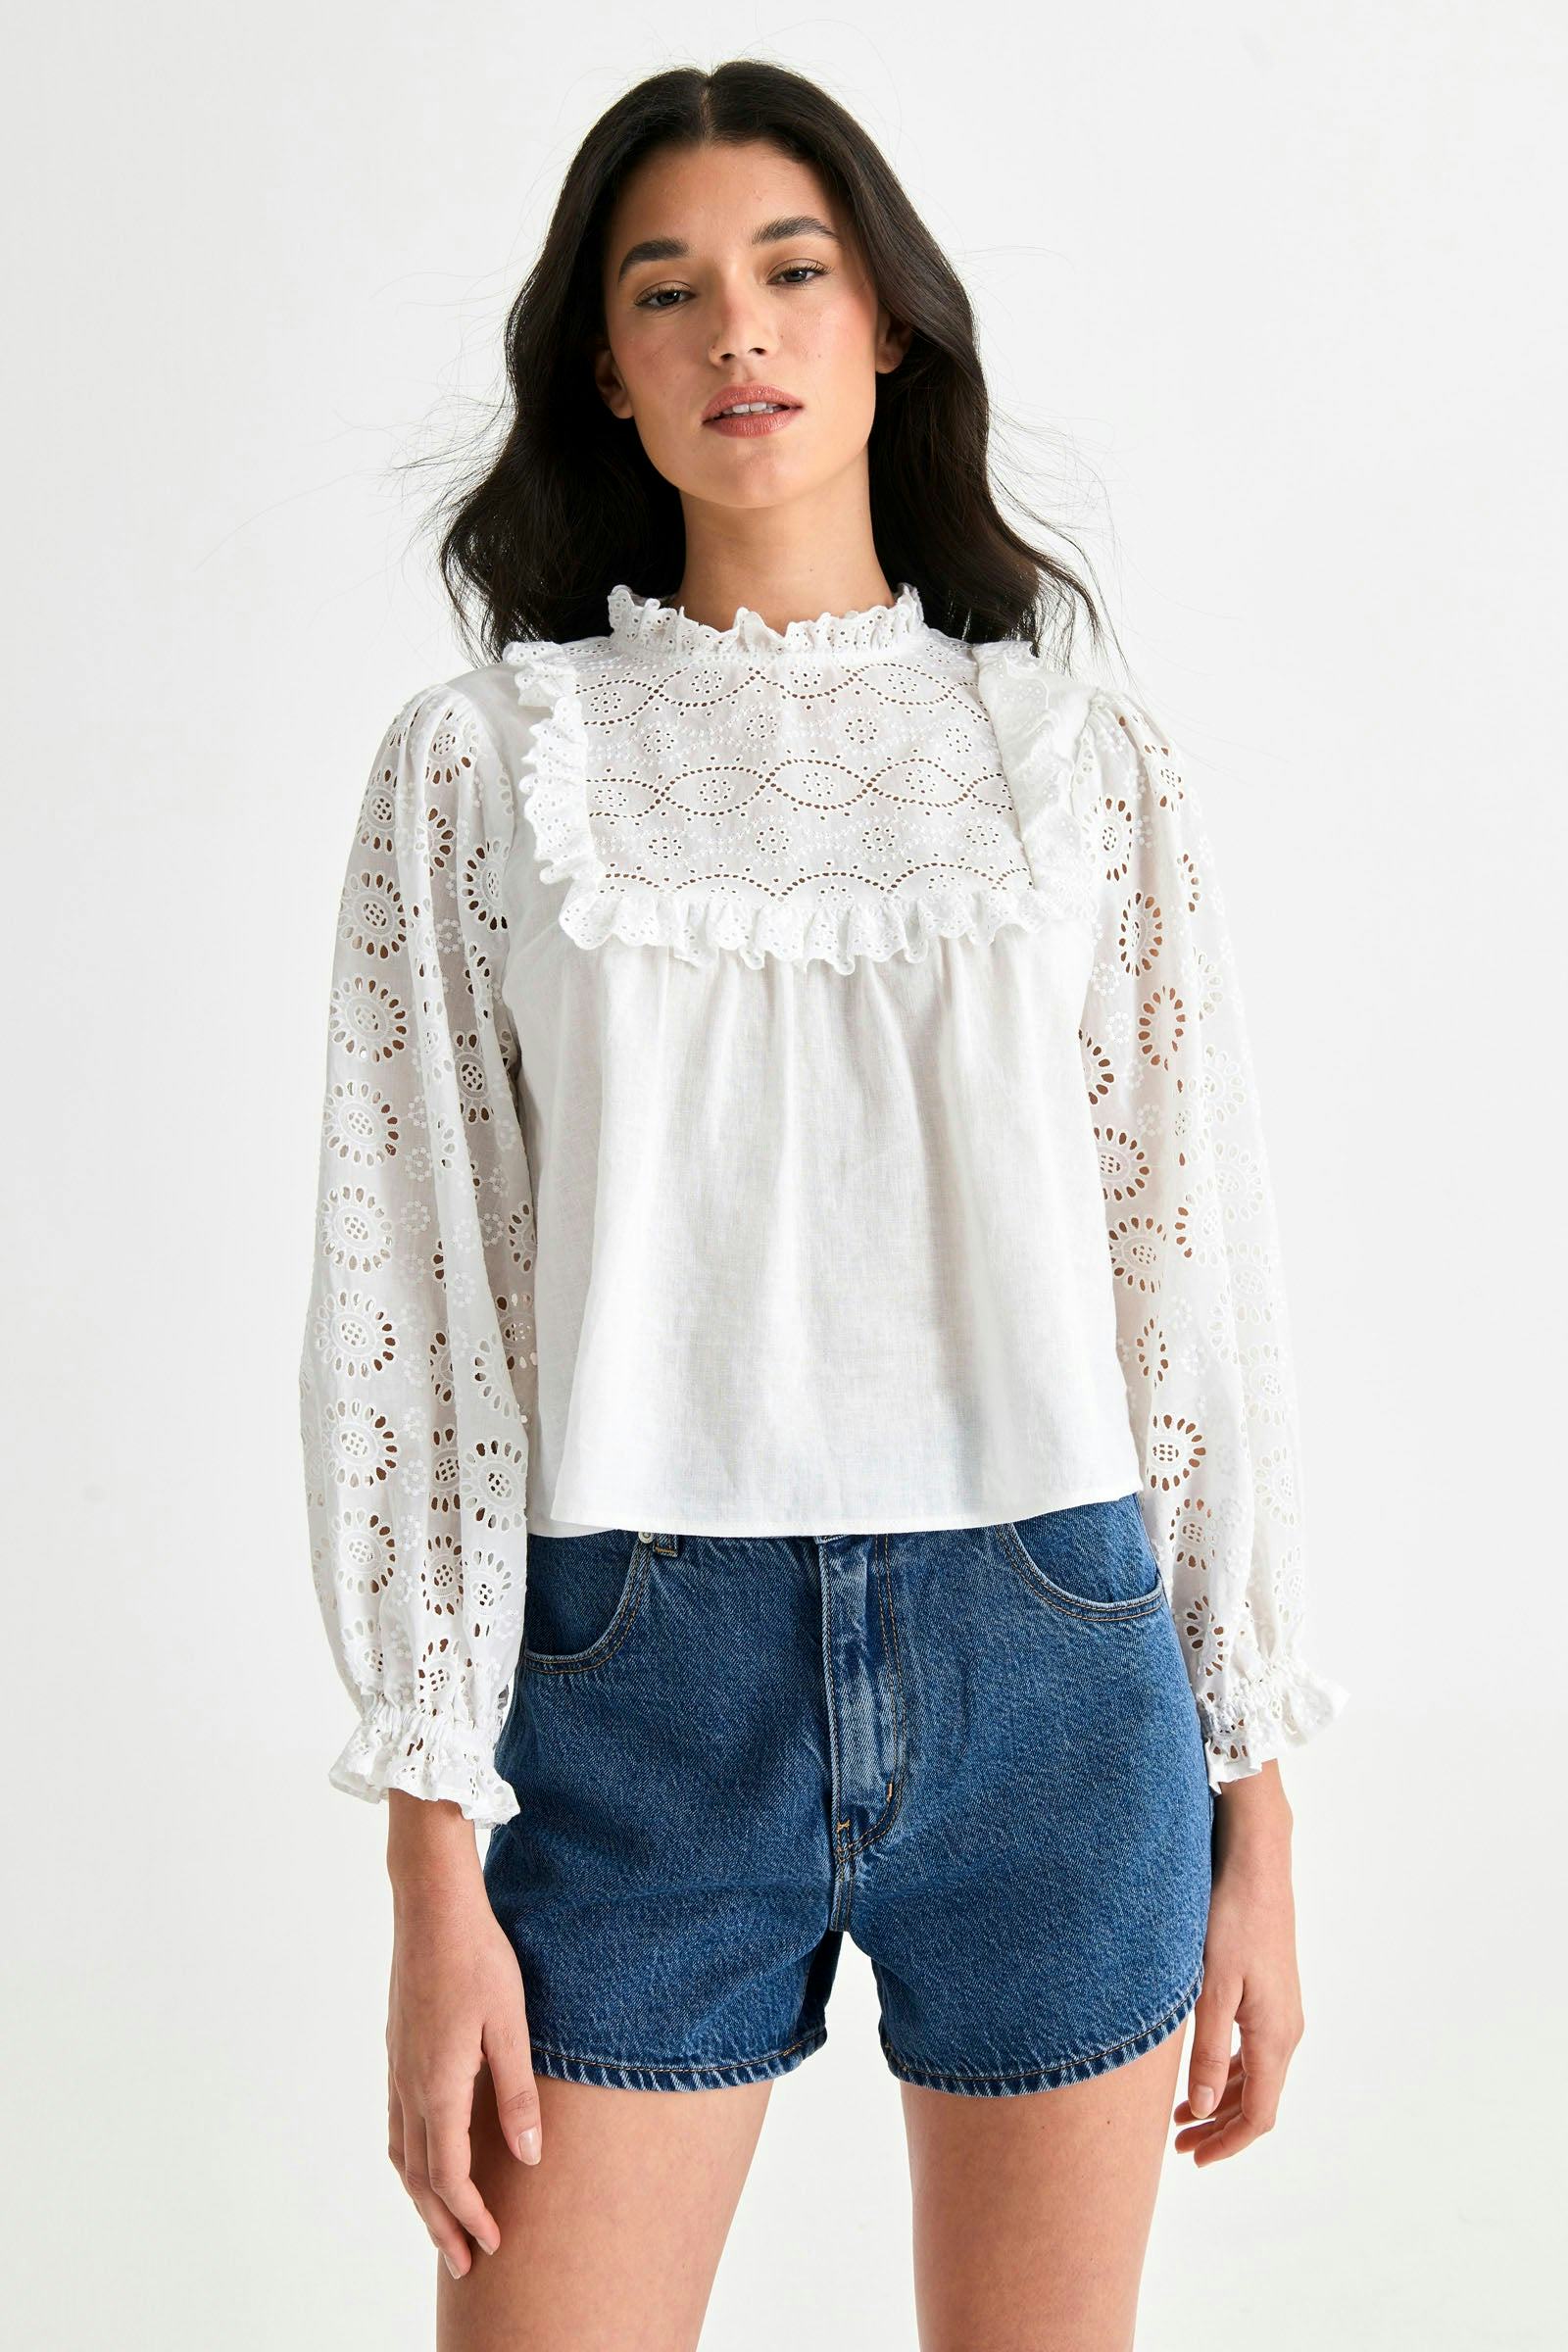 Buy Paris Lace Blouse - White Online | Rollas Jeans